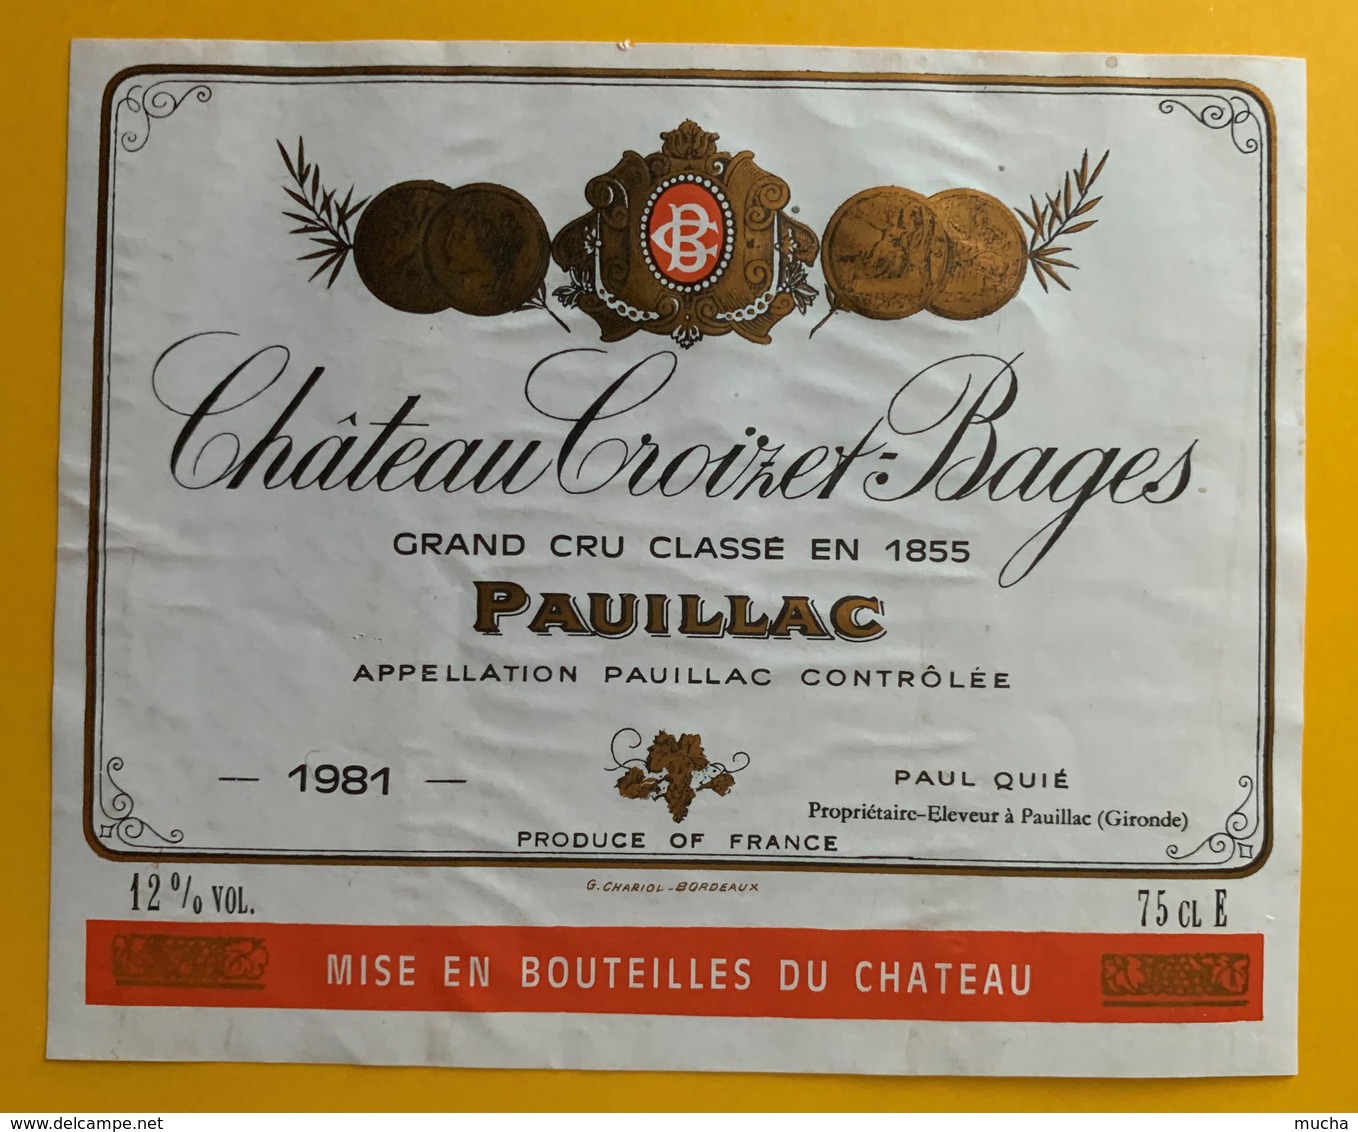 10746 - Château Croizet-Bages 1981 Pauillac - Bordeaux